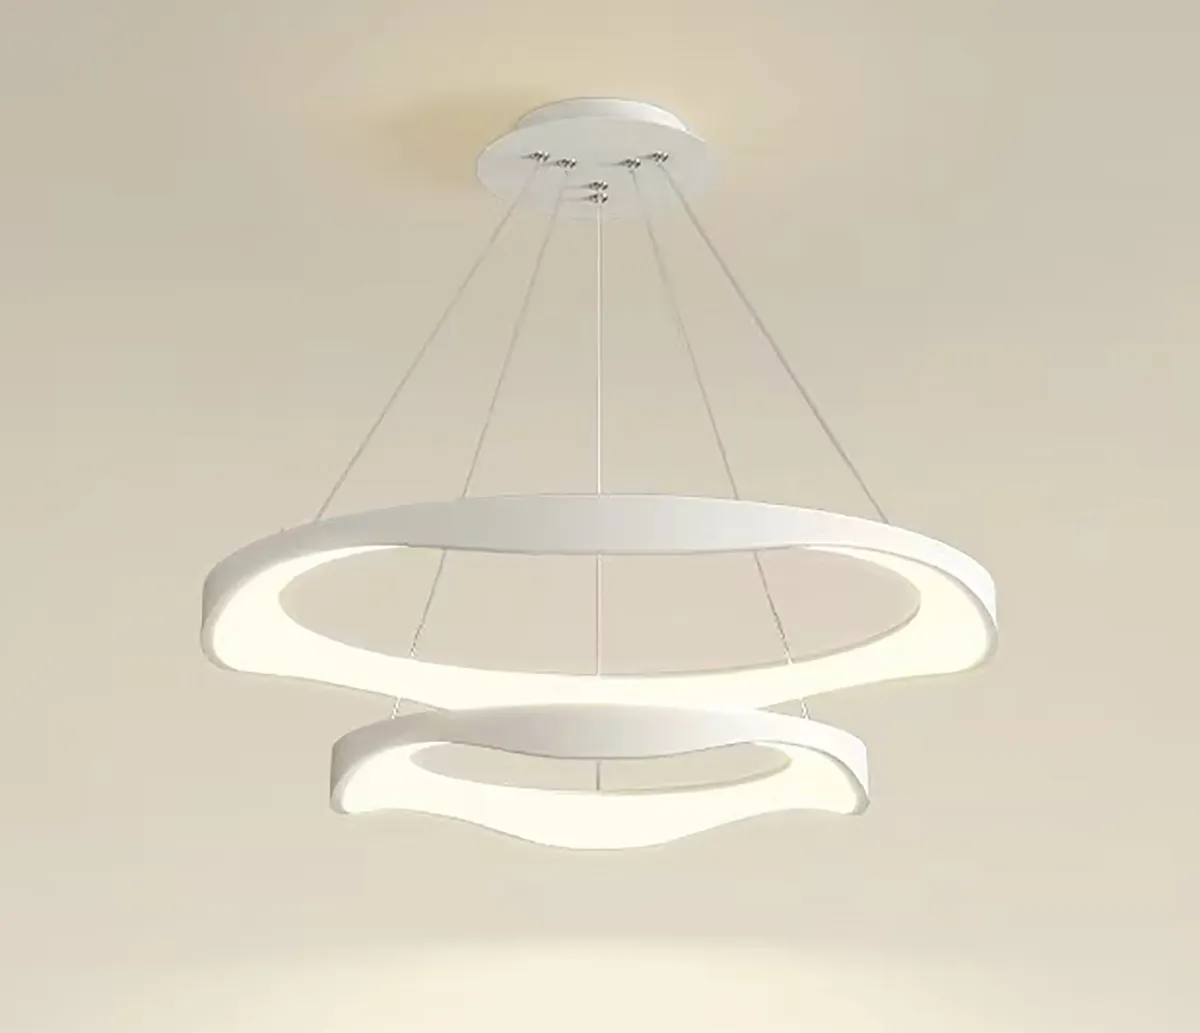 Candelabro de anillo LED de onda Simple creativa, lámpara colgante para sala de estar, cocina, restaurante, accesorios de iluminación decorativos para el hogar y el Hotel